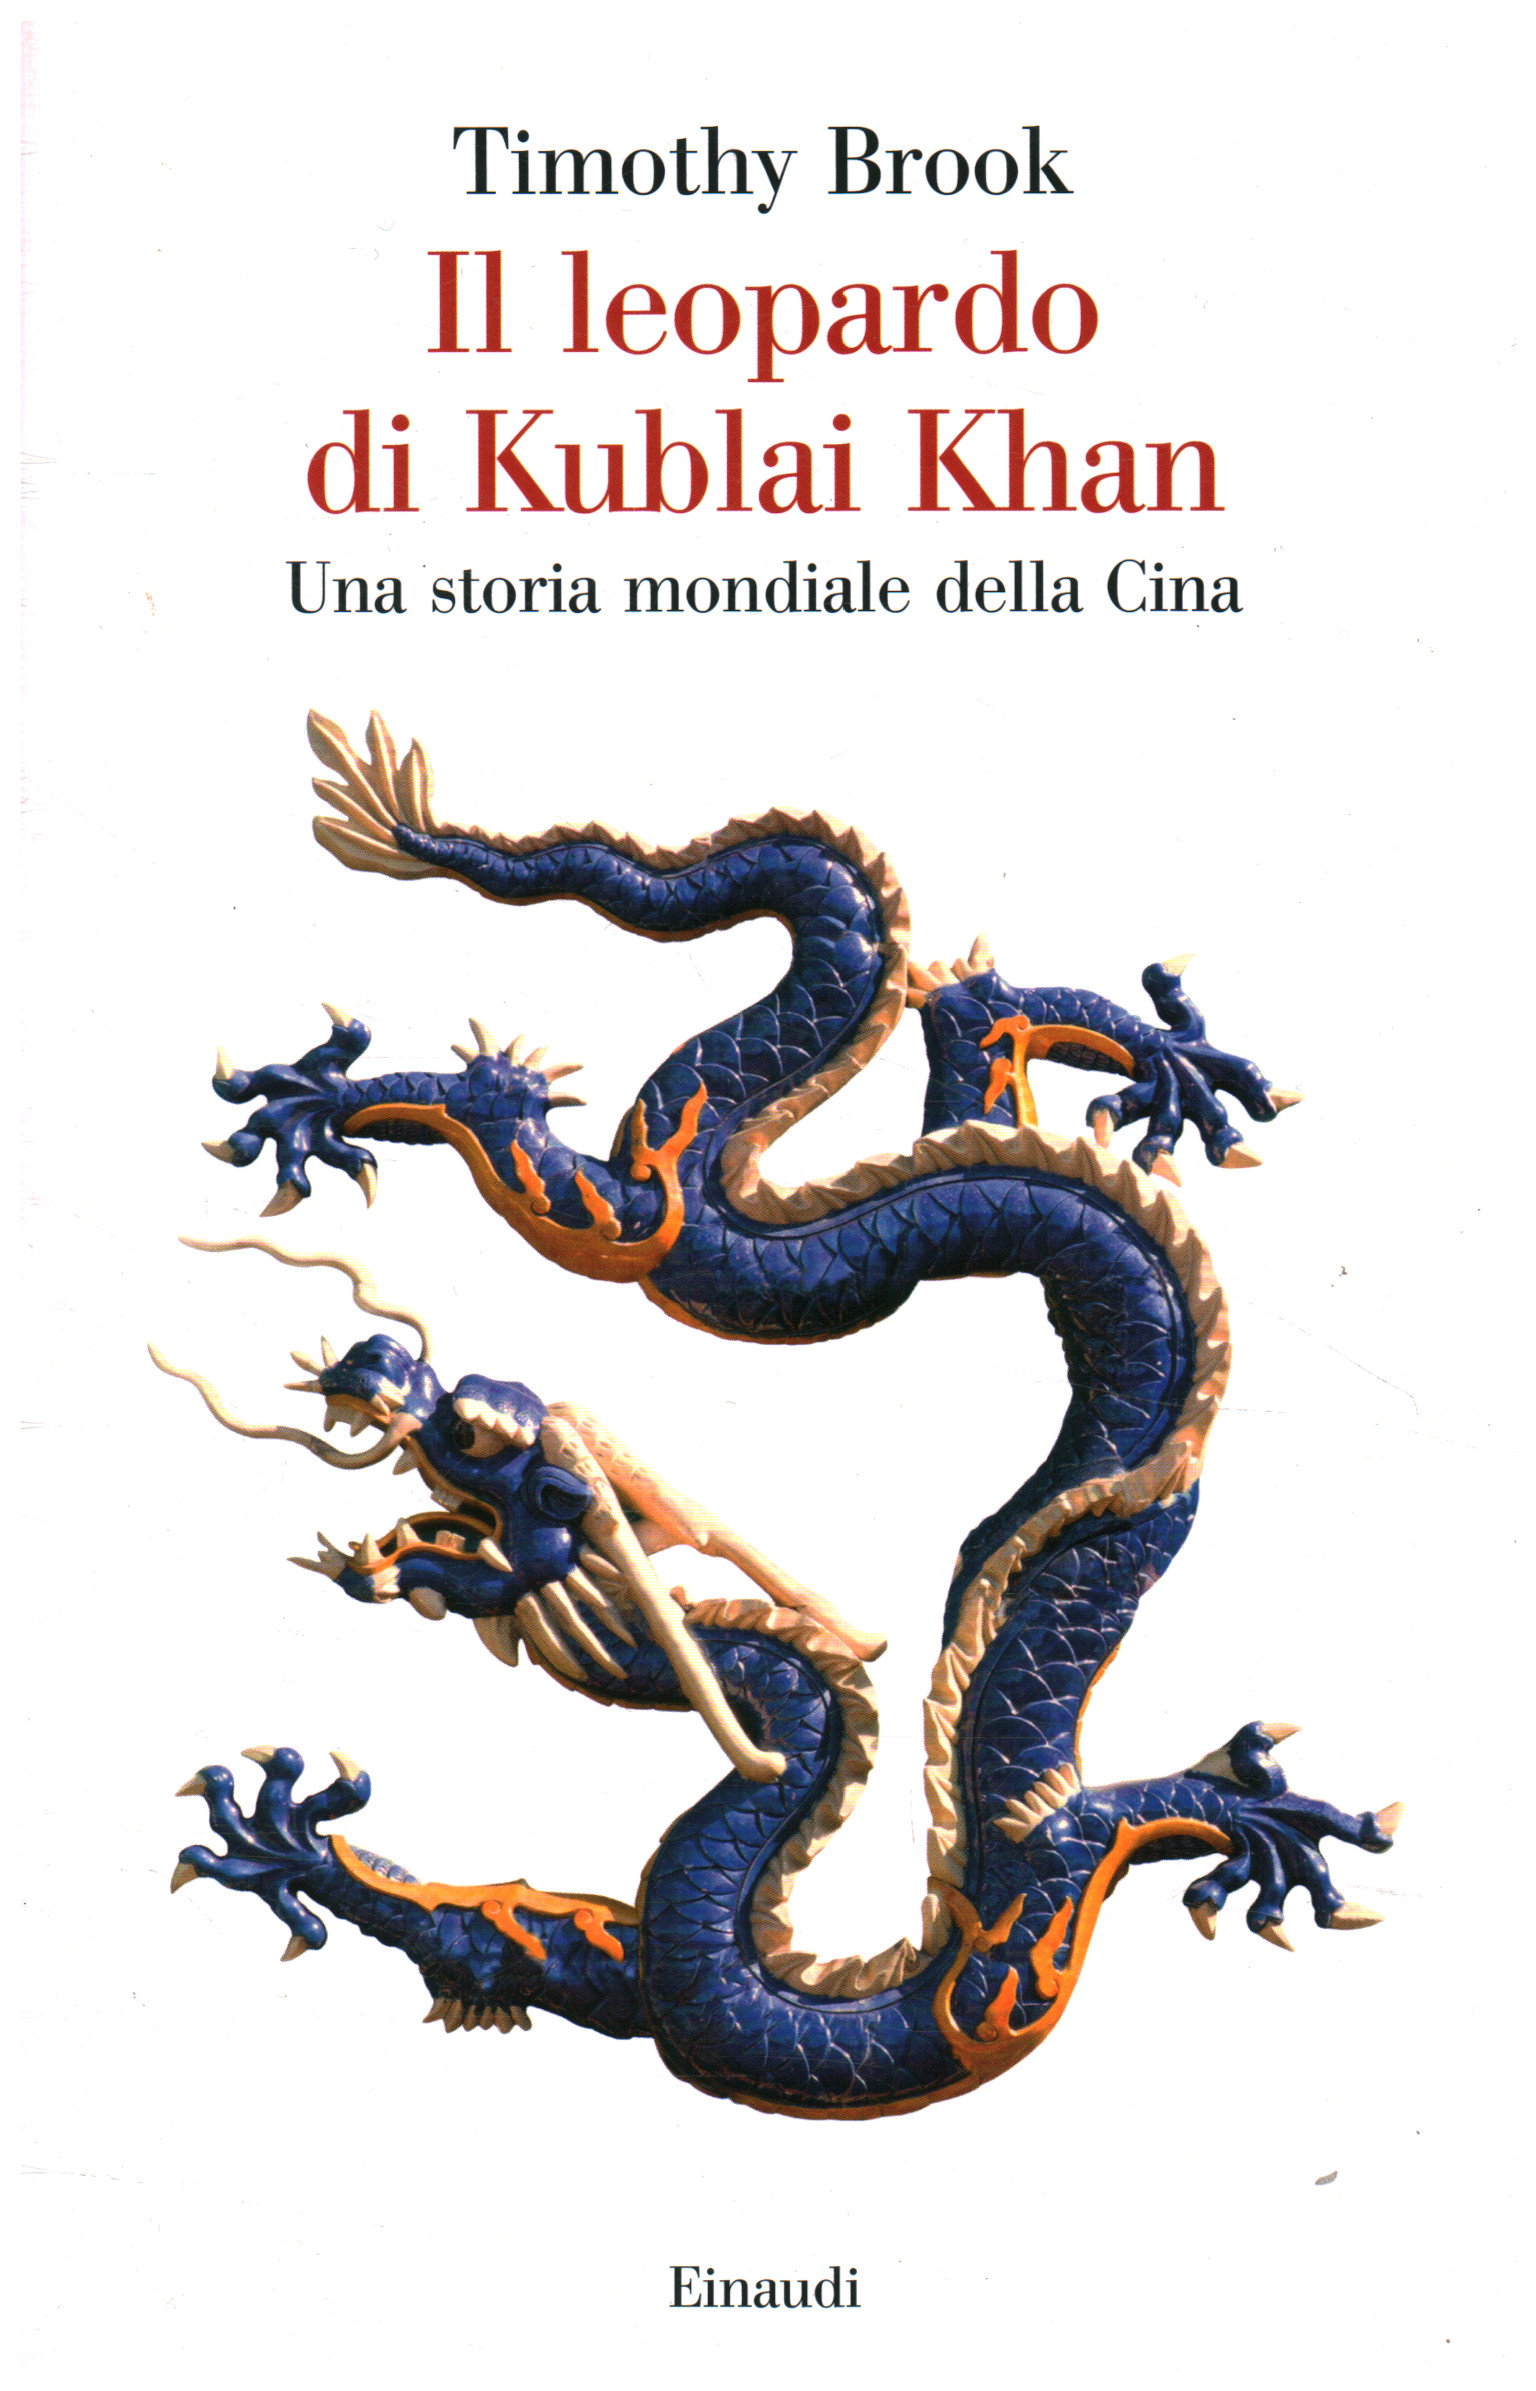 Kublai Khan's leopard